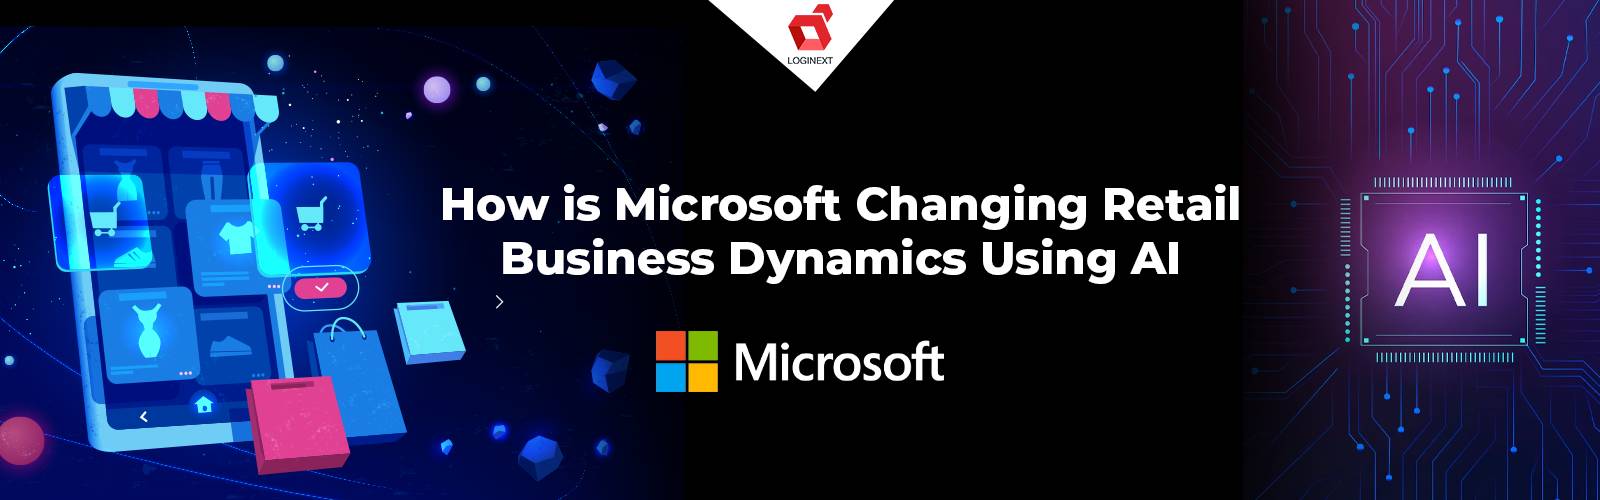 Microsoft เปลี่ยนแปลง Dynamics ของธุรกิจค้าปลีกโดยใช้ Generative AI อย่างไร